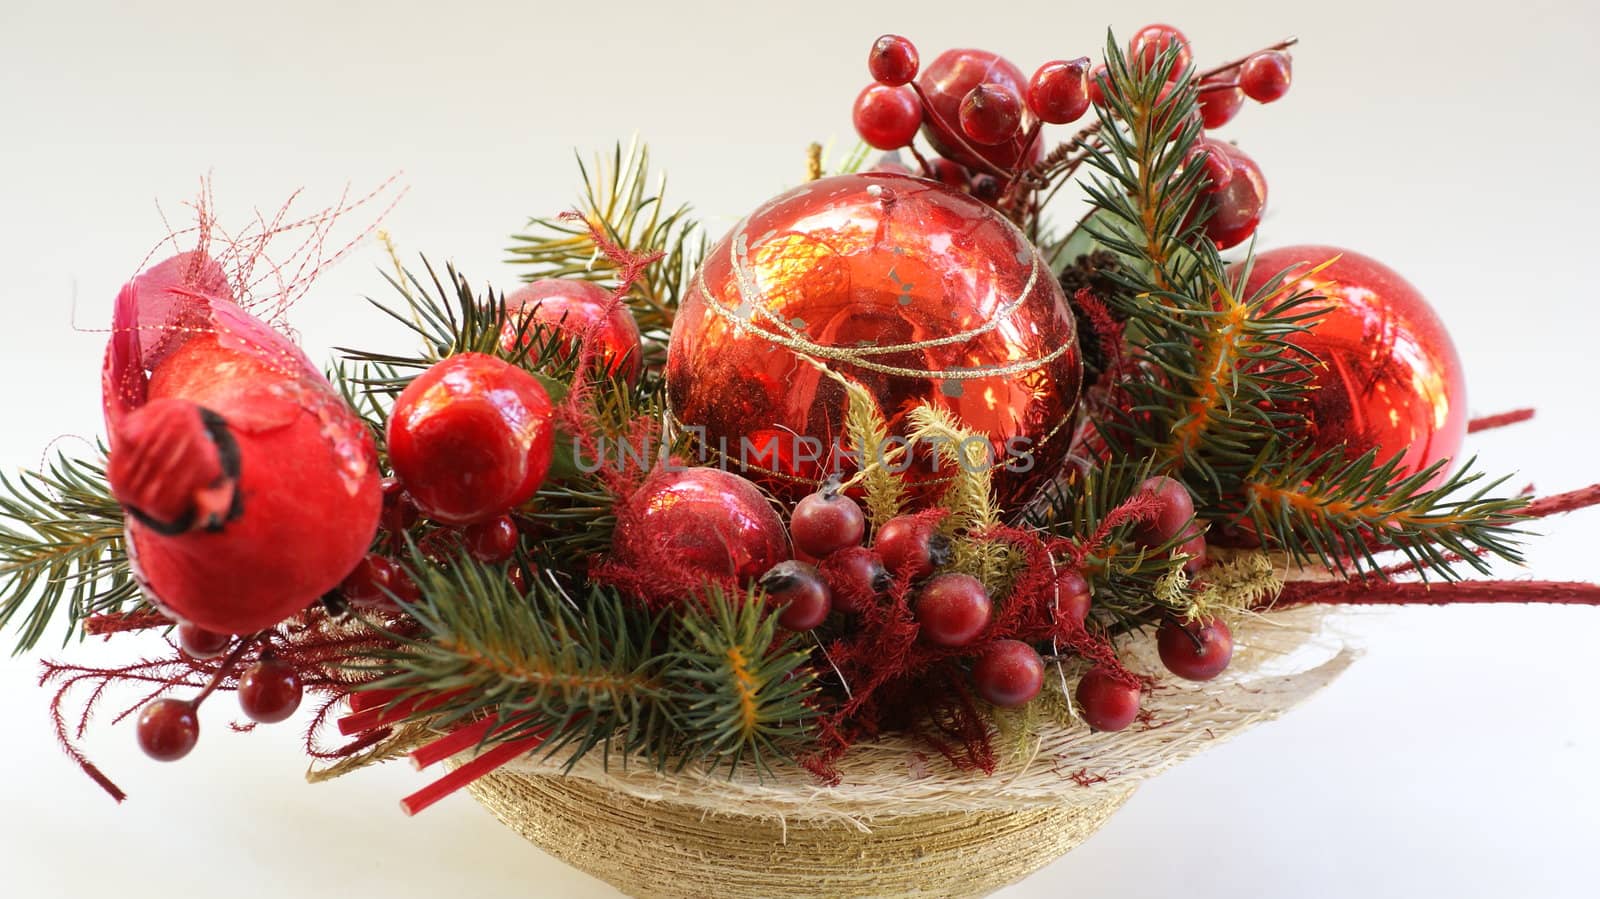 Decoration on holidays by mariola_garula